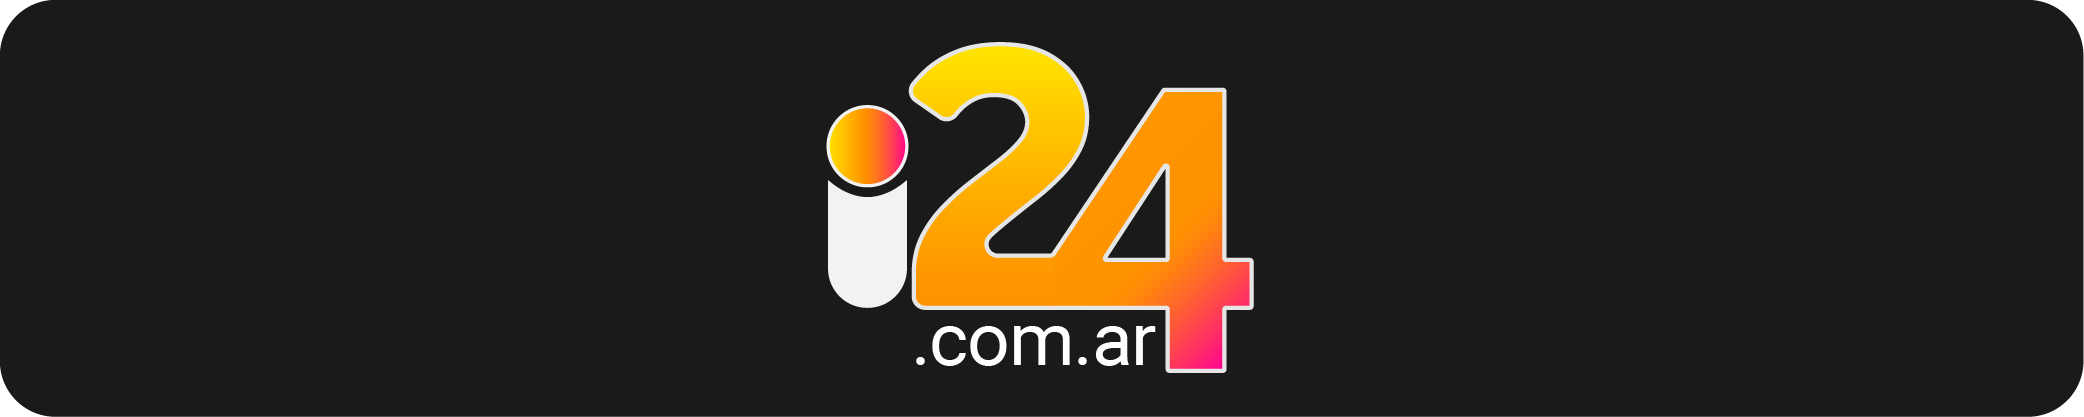 i24.com.ar